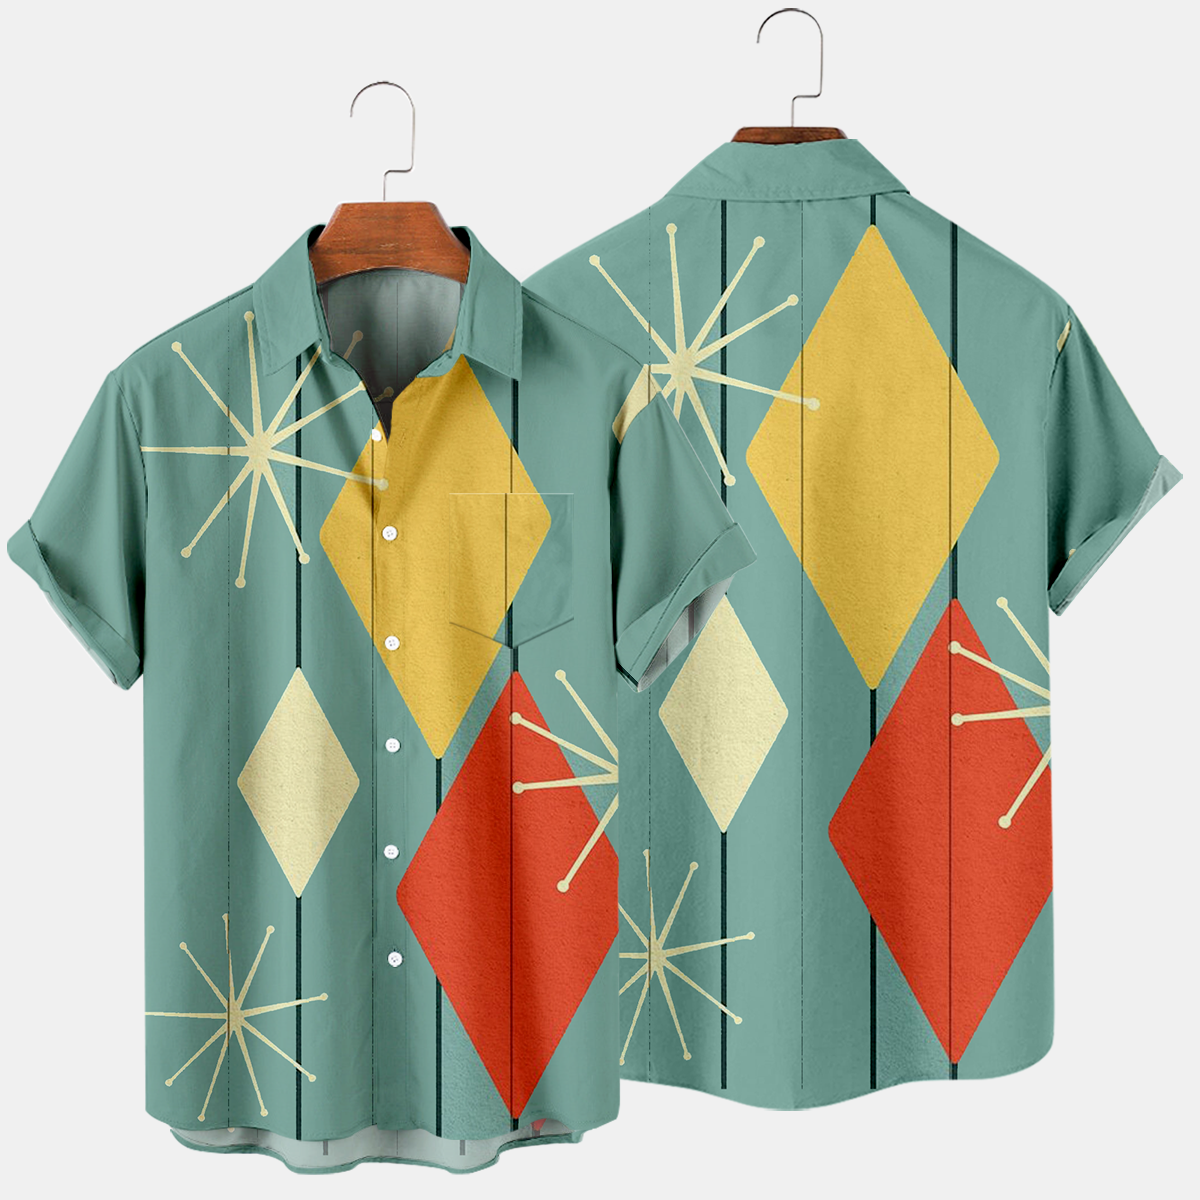 Men's Fashion Casual Geometry Striped Hawaiian Shirts & Tops